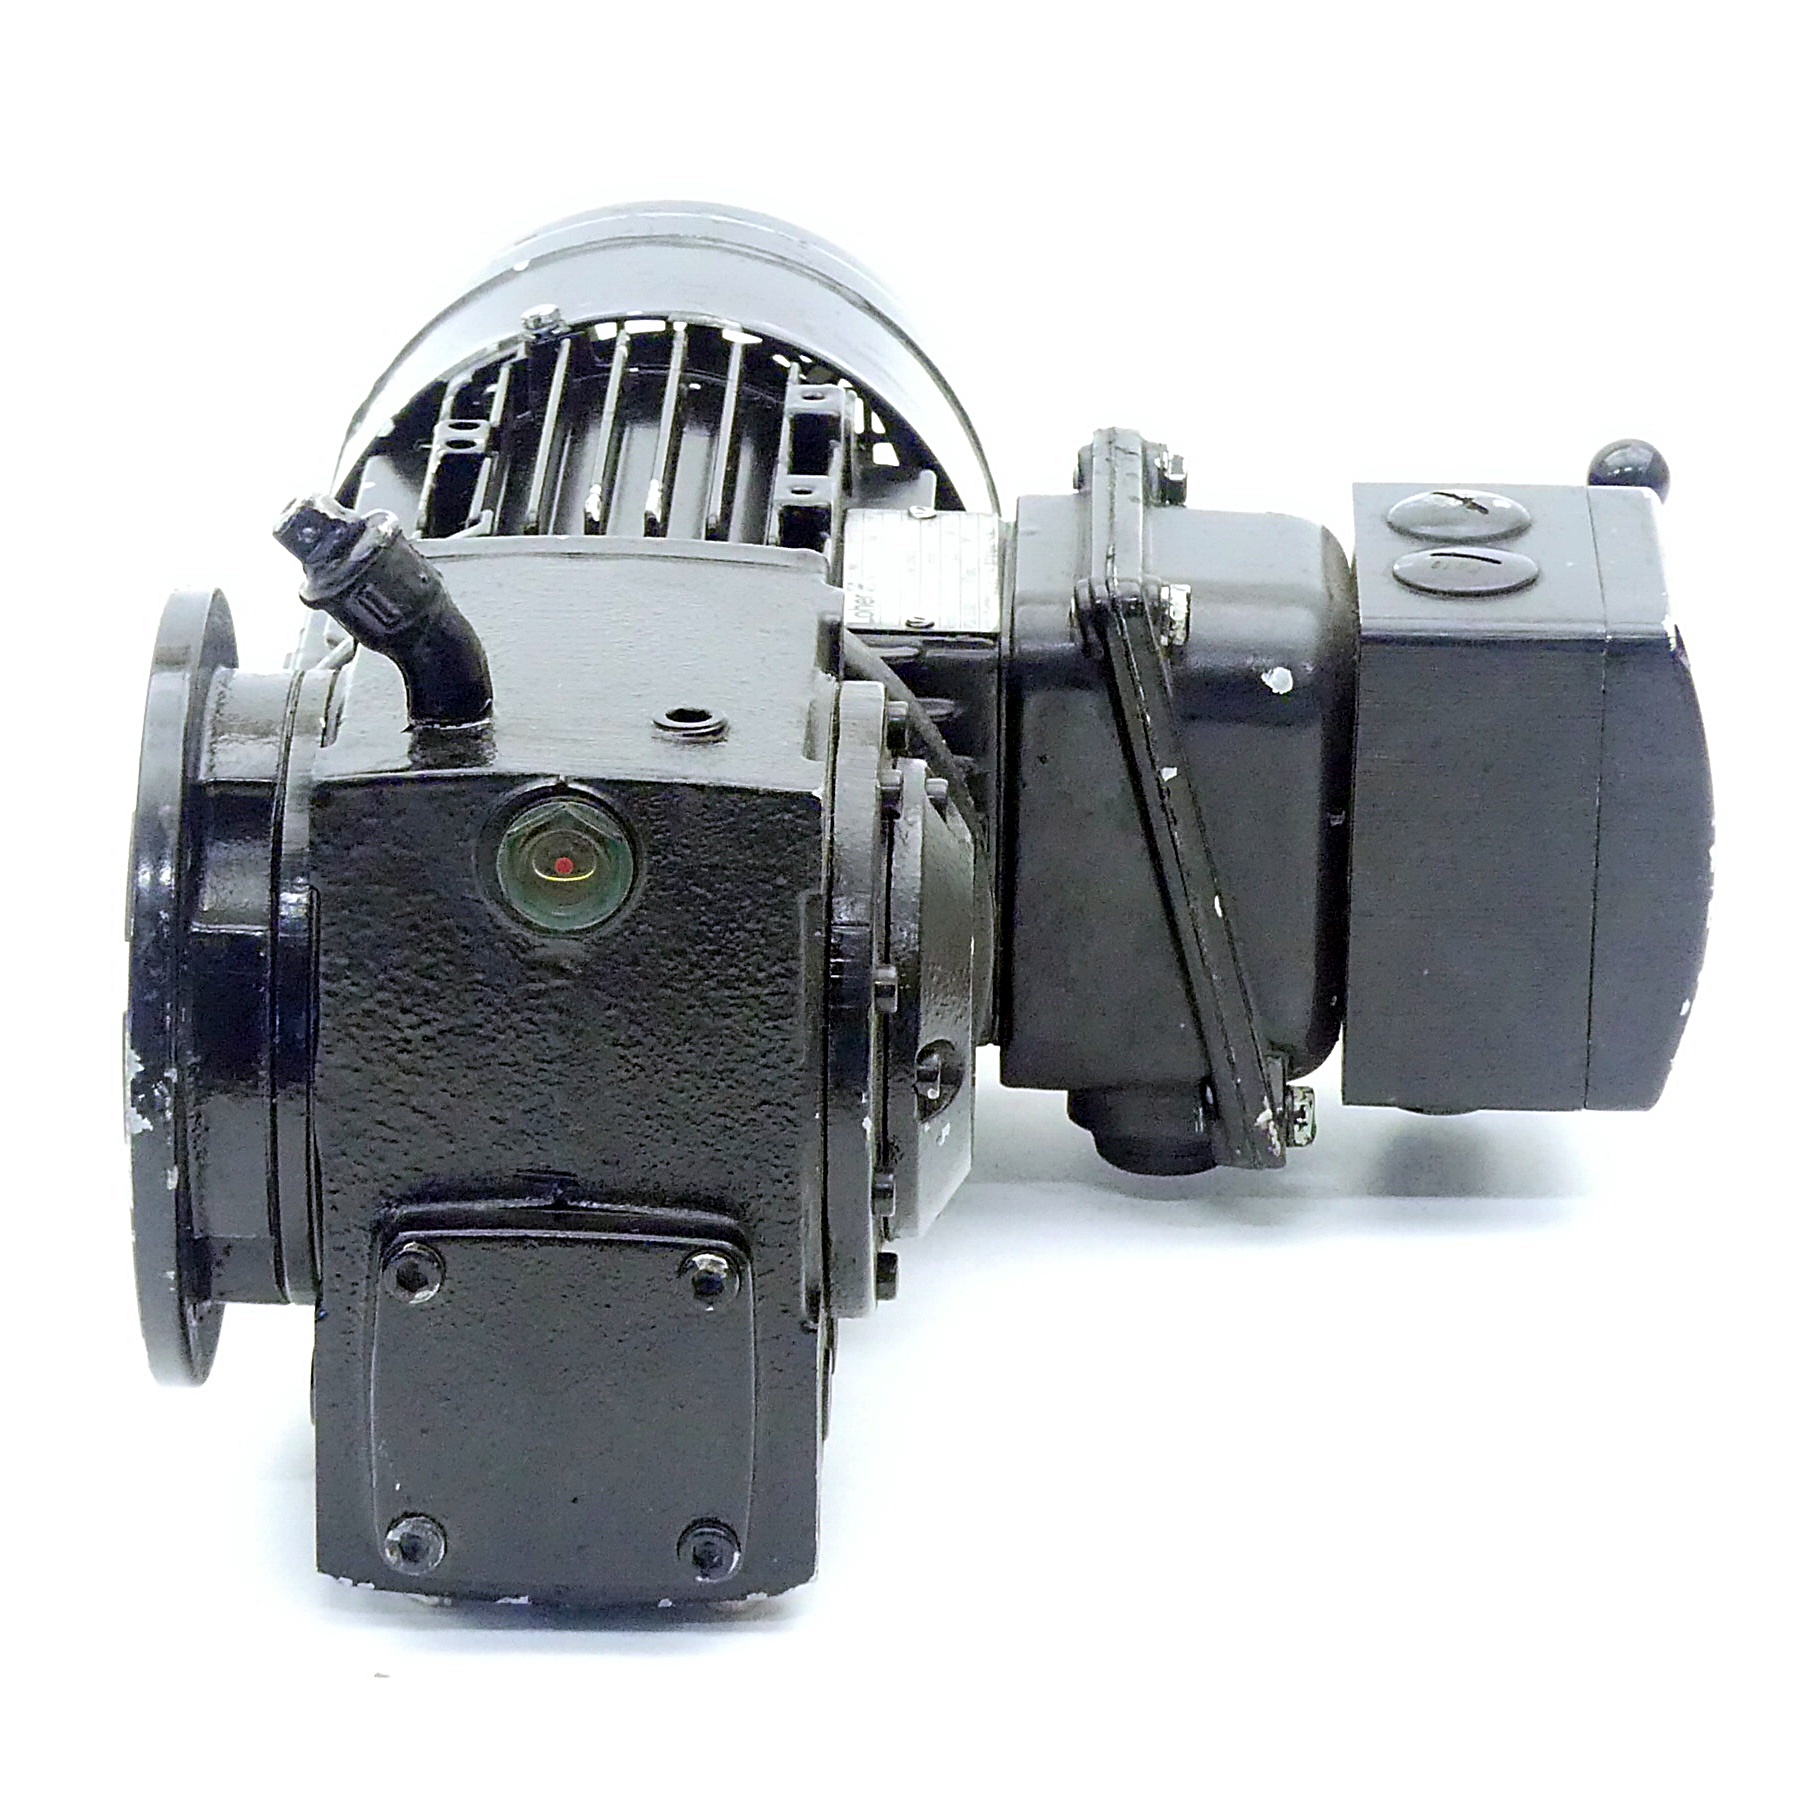 Getriebemotor ABCA-01BG-426 + DVW1-1451-022/033 